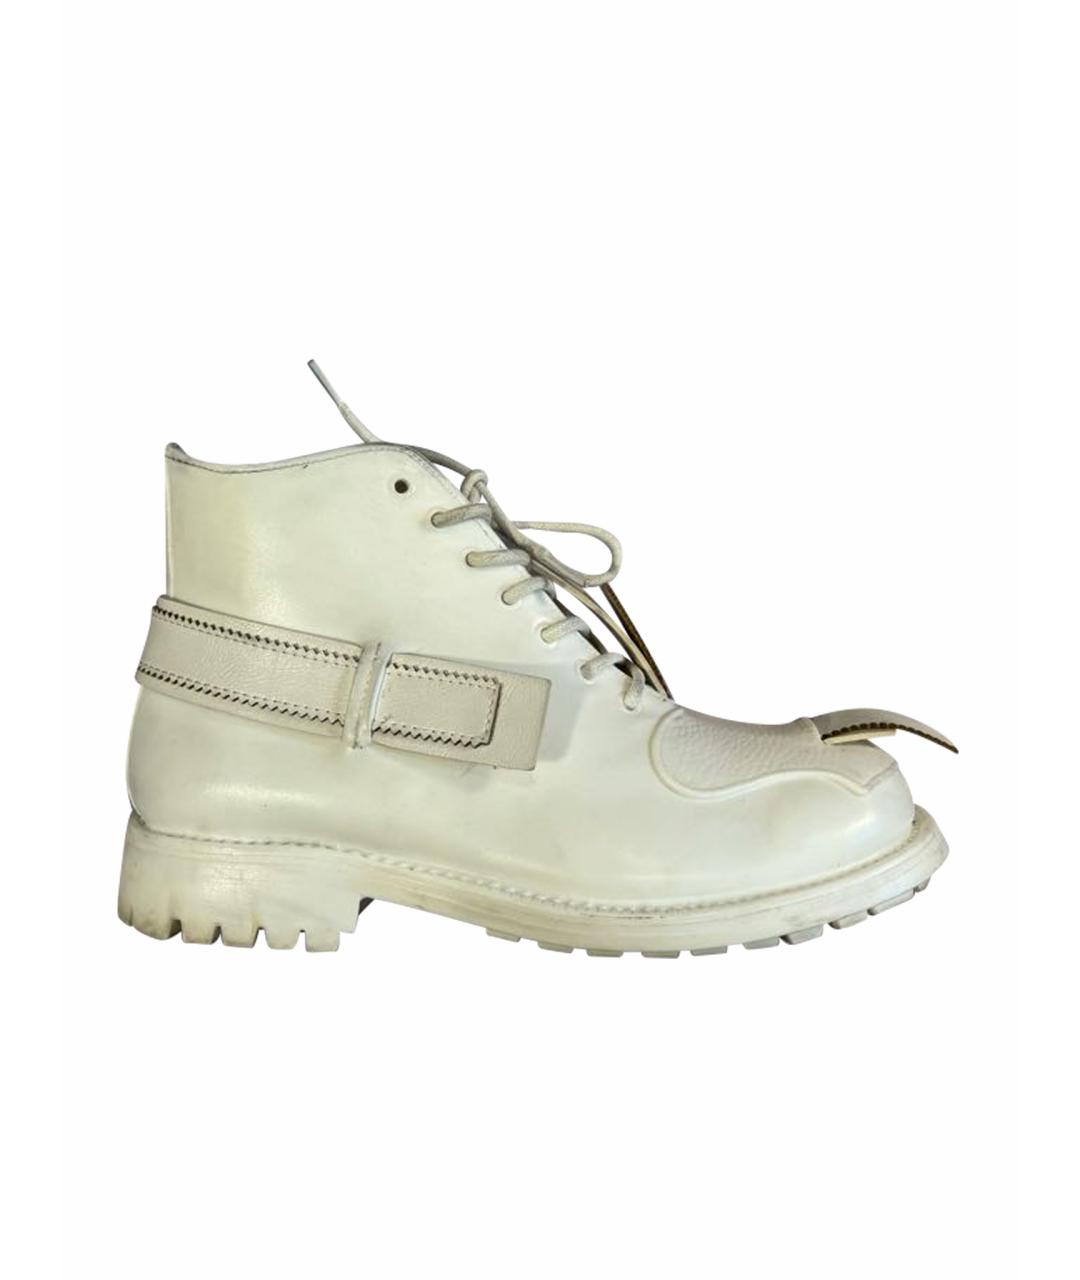 TAKAHIROMIYASHITA THE SOLOIST Белые низкие ботинки из искусственной кожи, фото 1